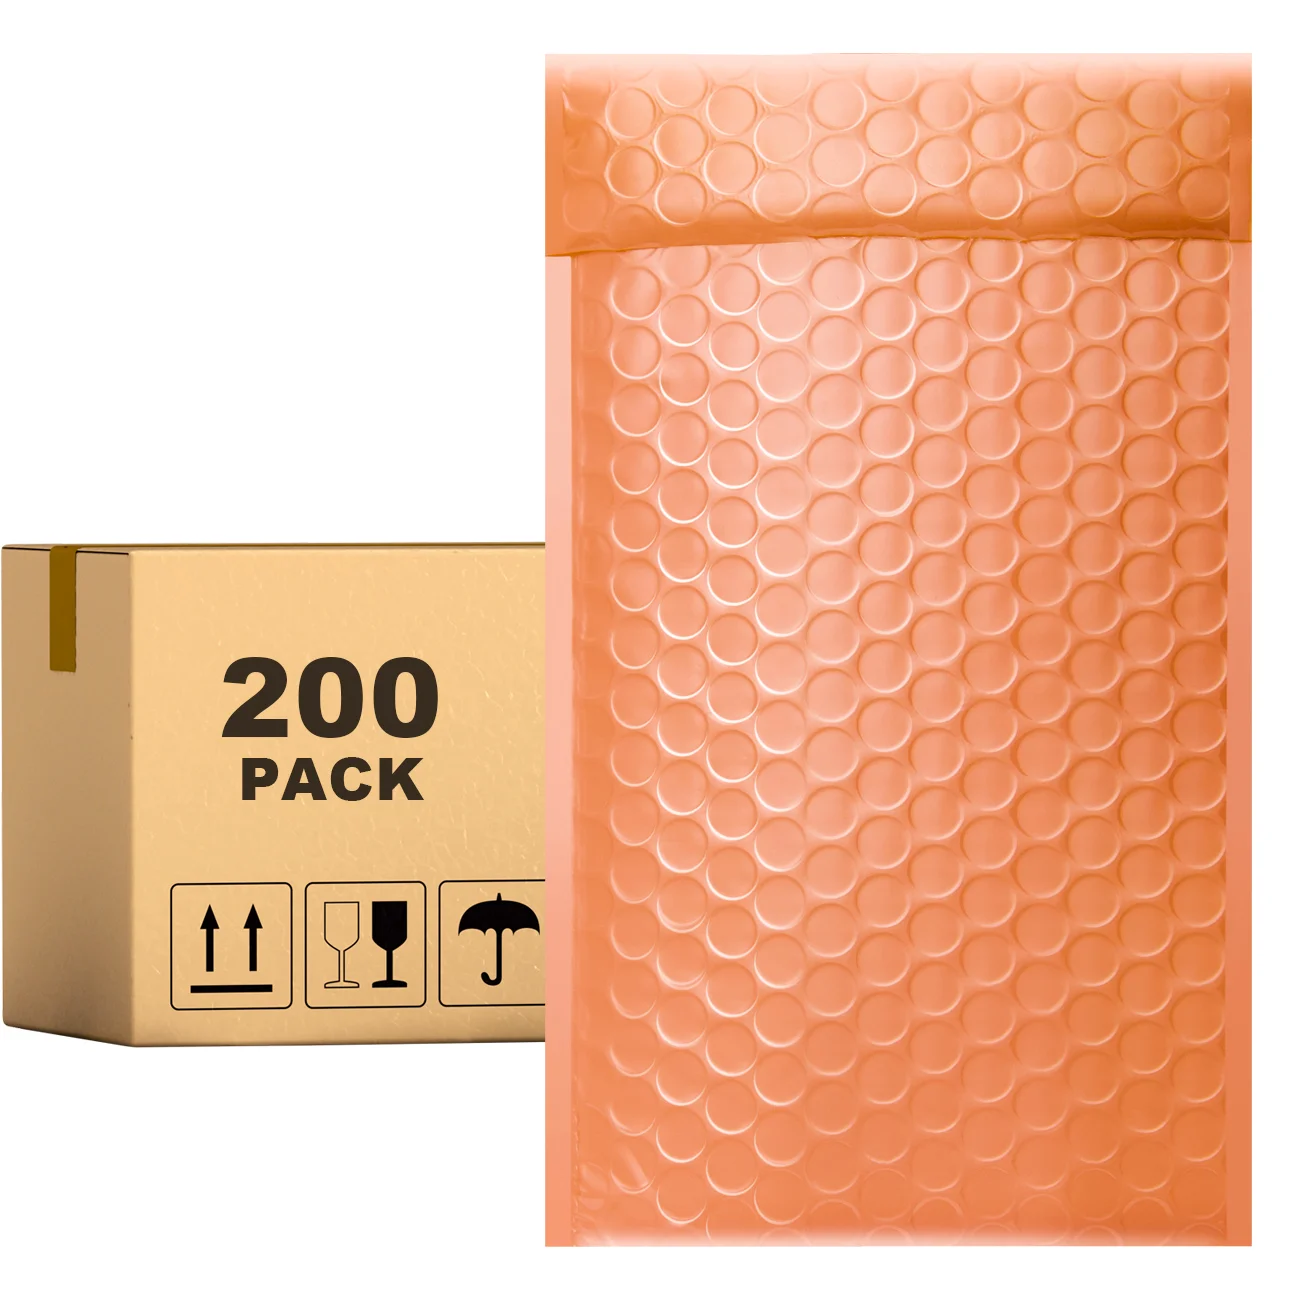 

Конверты пузырчатые оранжевые PACKAPRO 7x10, 200 шт. для упаковки, отправки, доставки